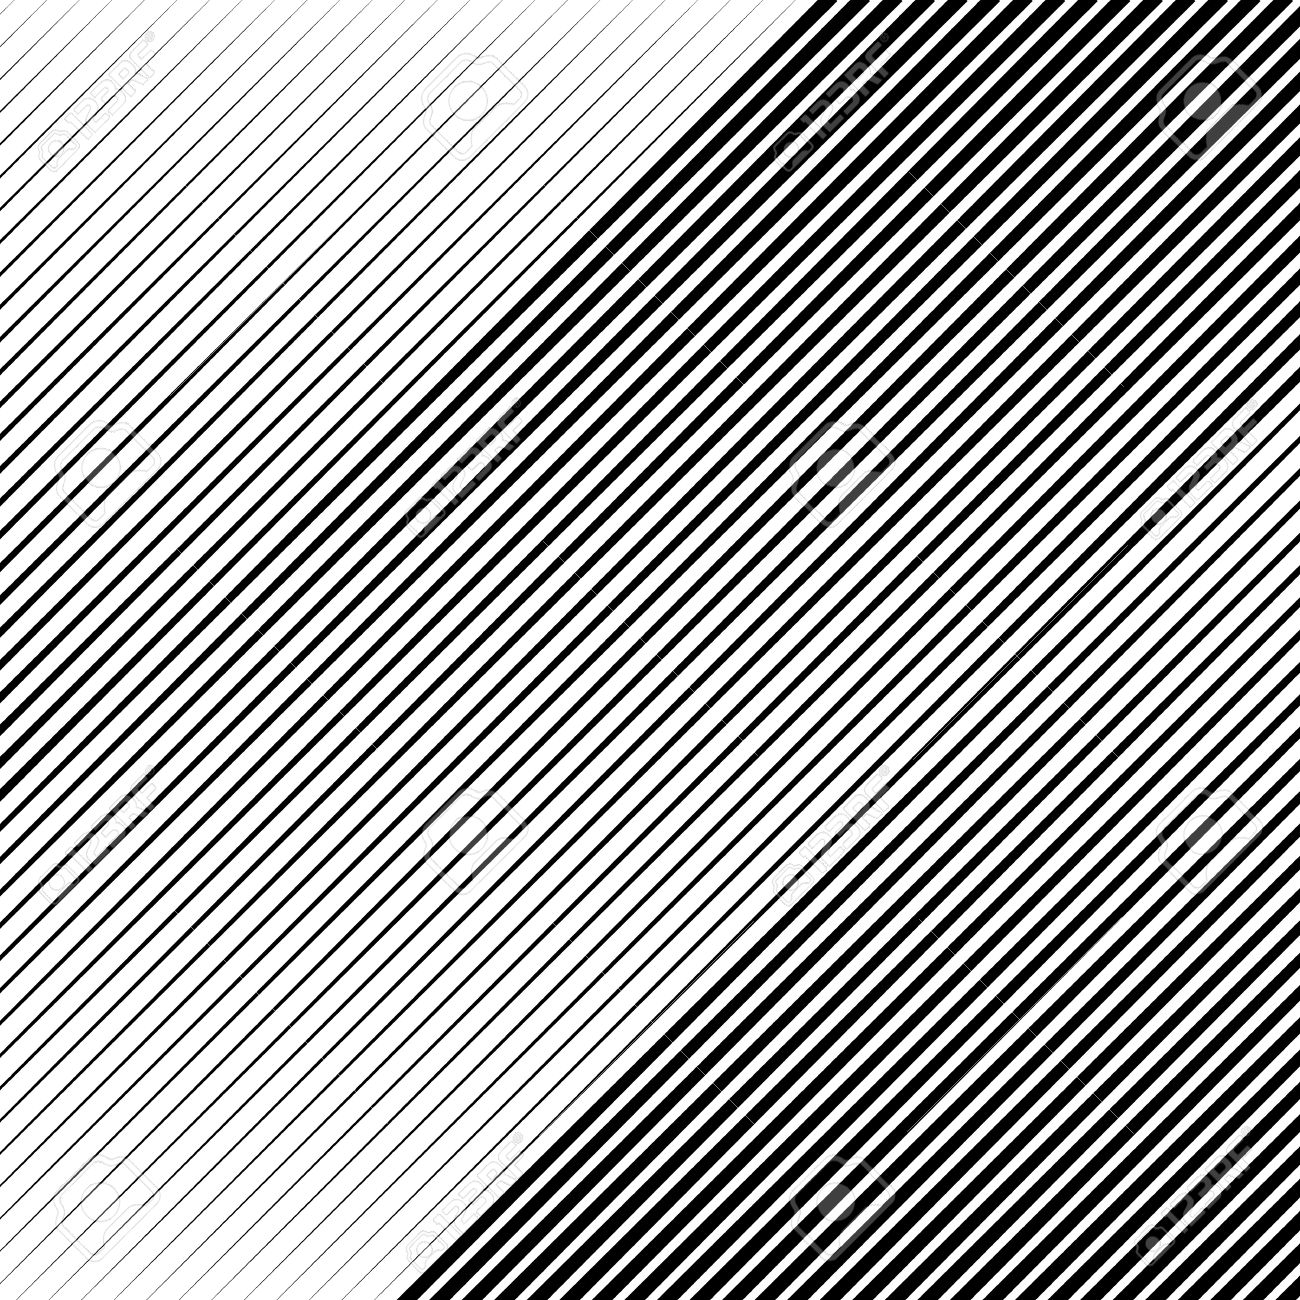 Diagonal Line Pattern